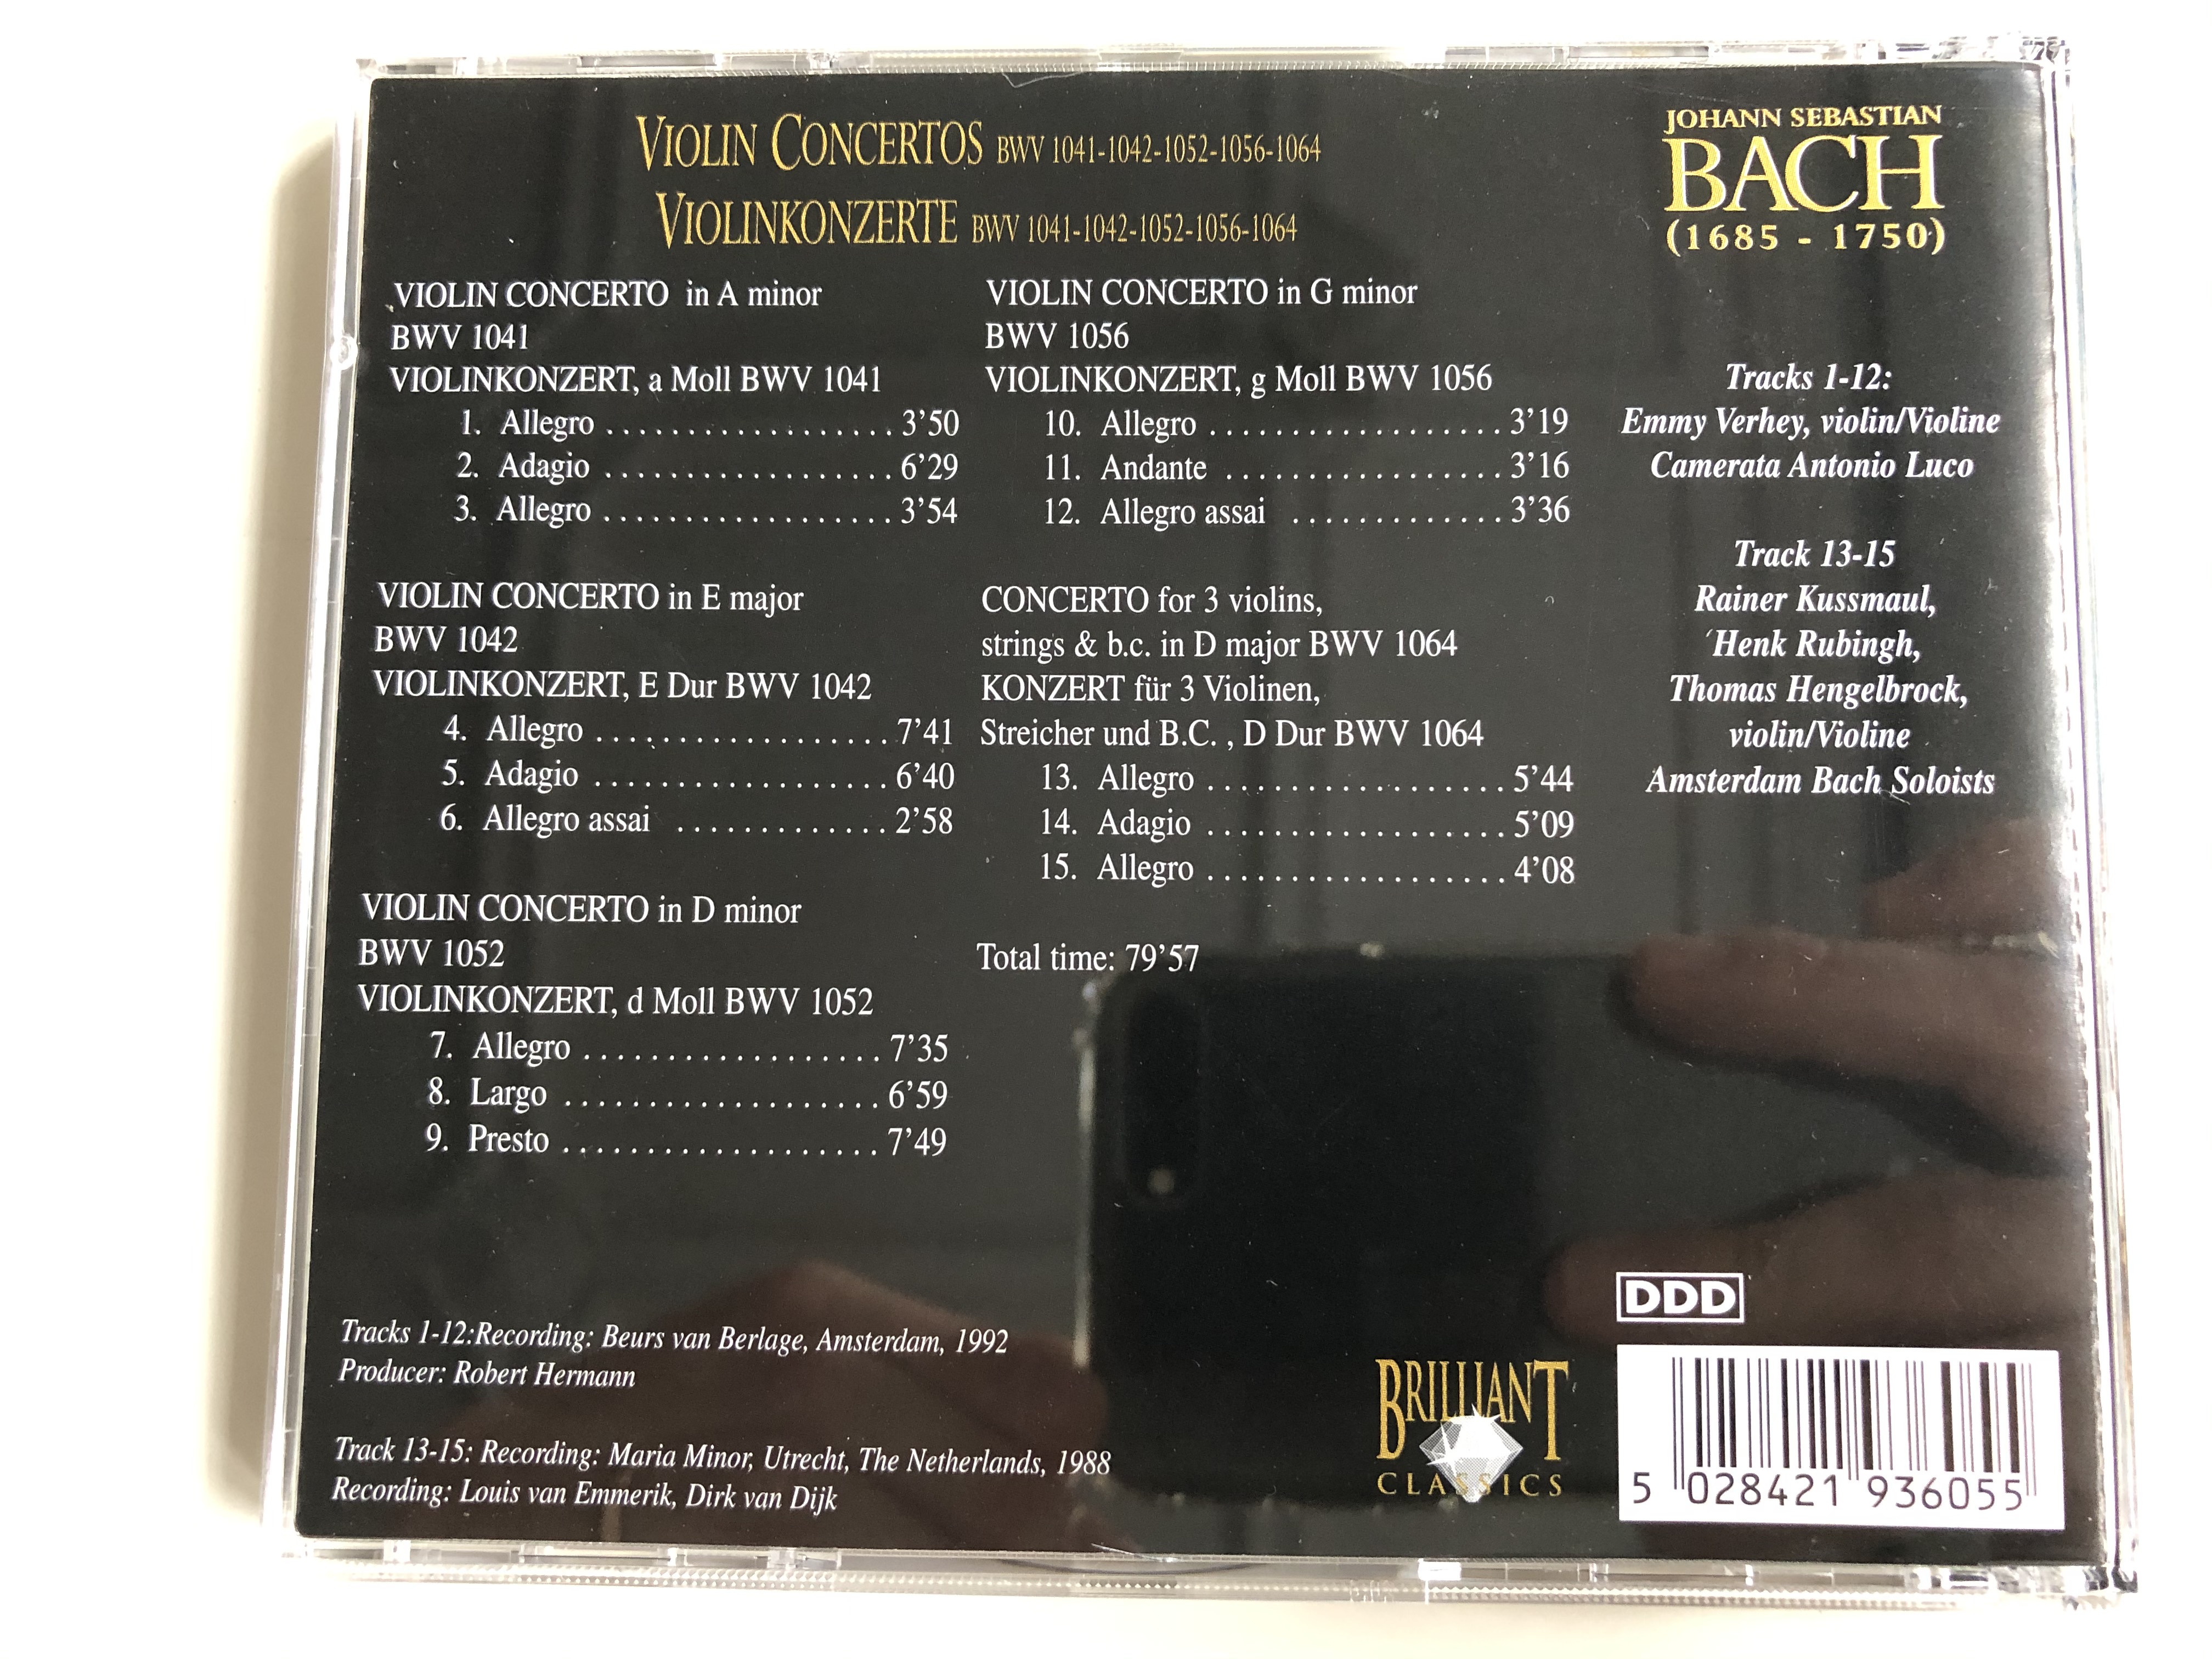 bach-edition-violin-concertos-violinkonzerte-brilliant-classics-audio-cd-993605-4-.jpg